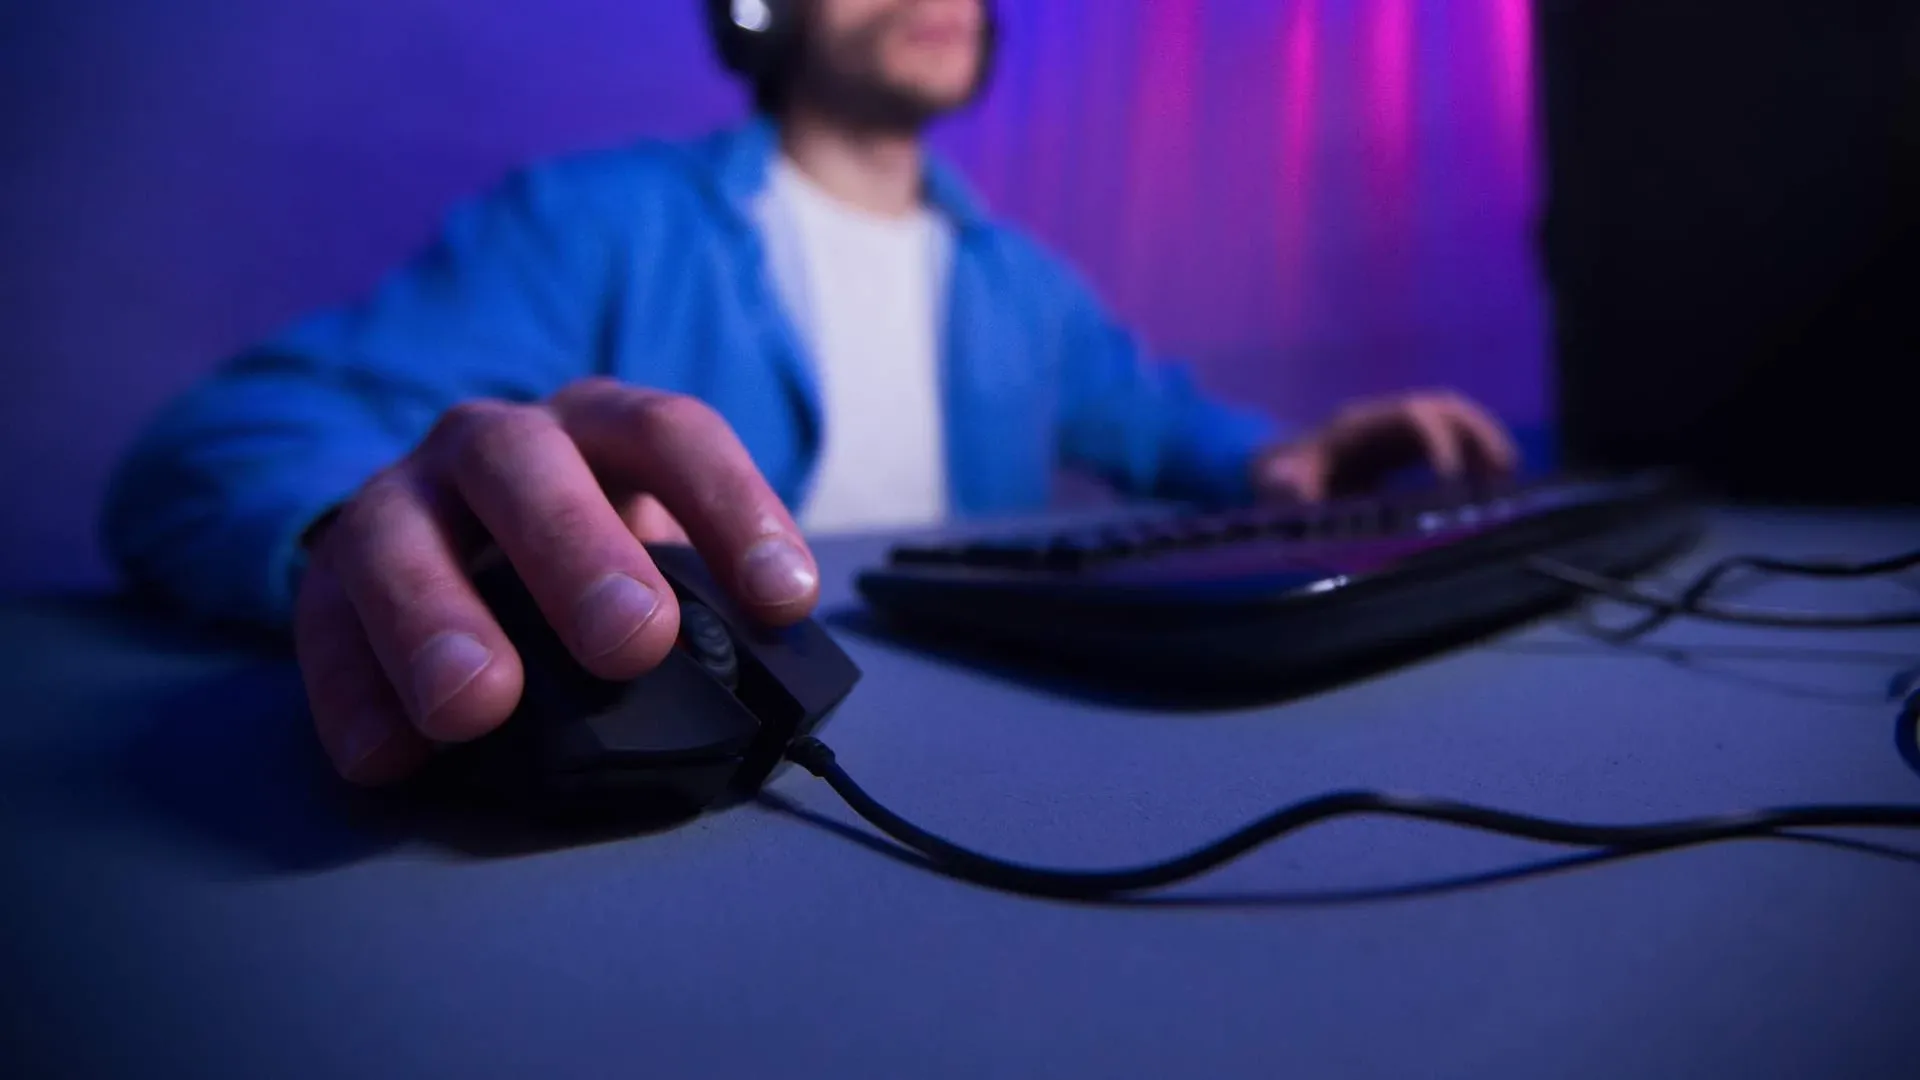 Homem branco jogando no computador, com foco em sua mão usando o mouse gamer e fundo desfocado